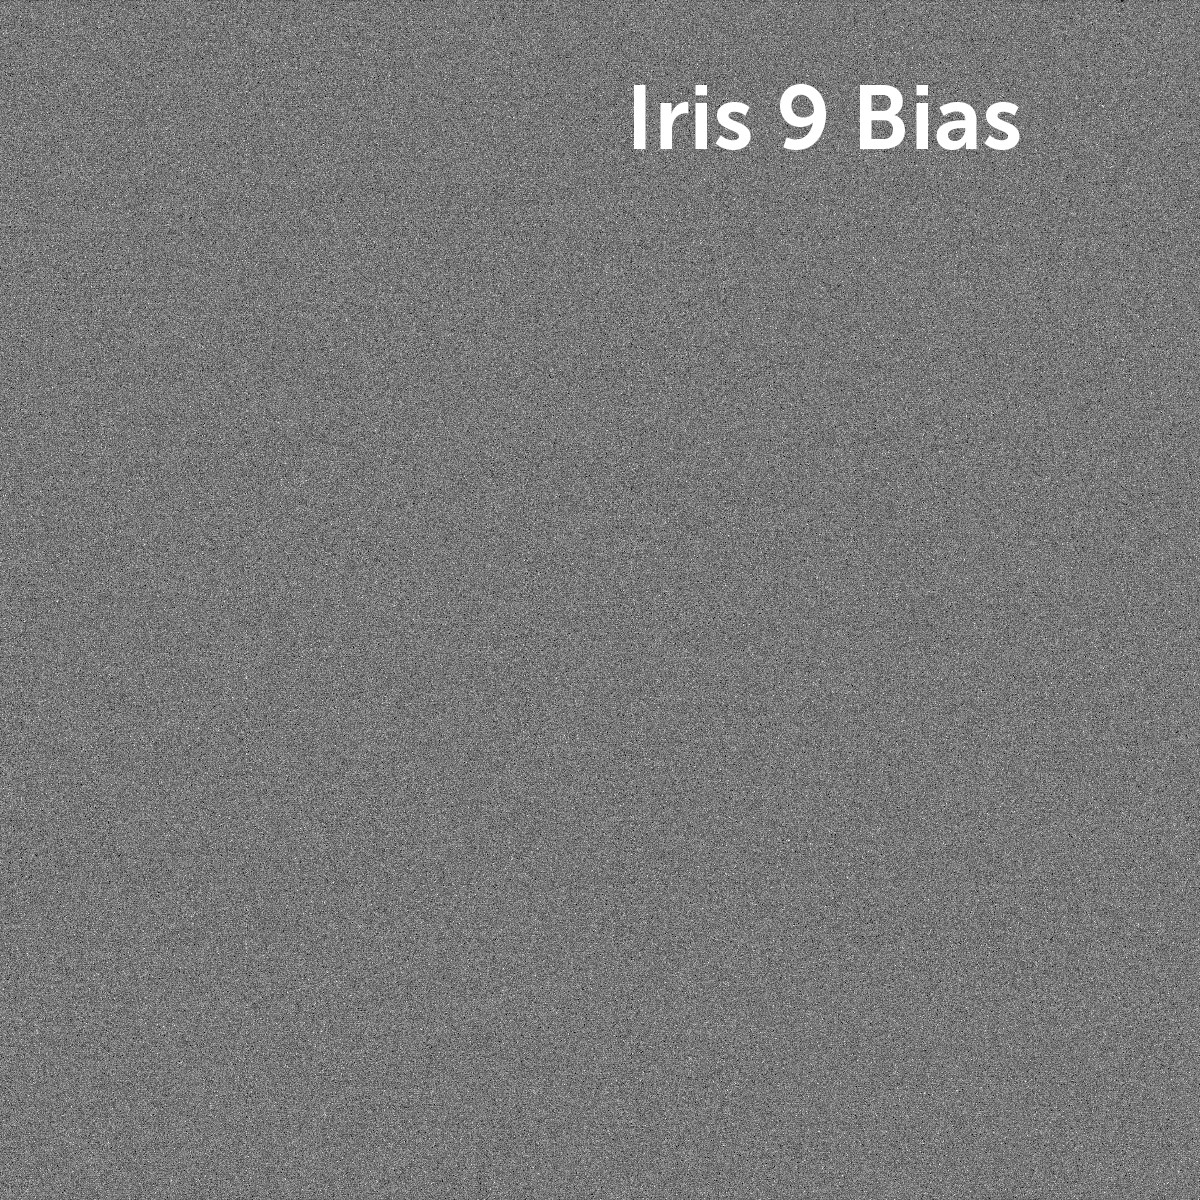 Iris9-bias